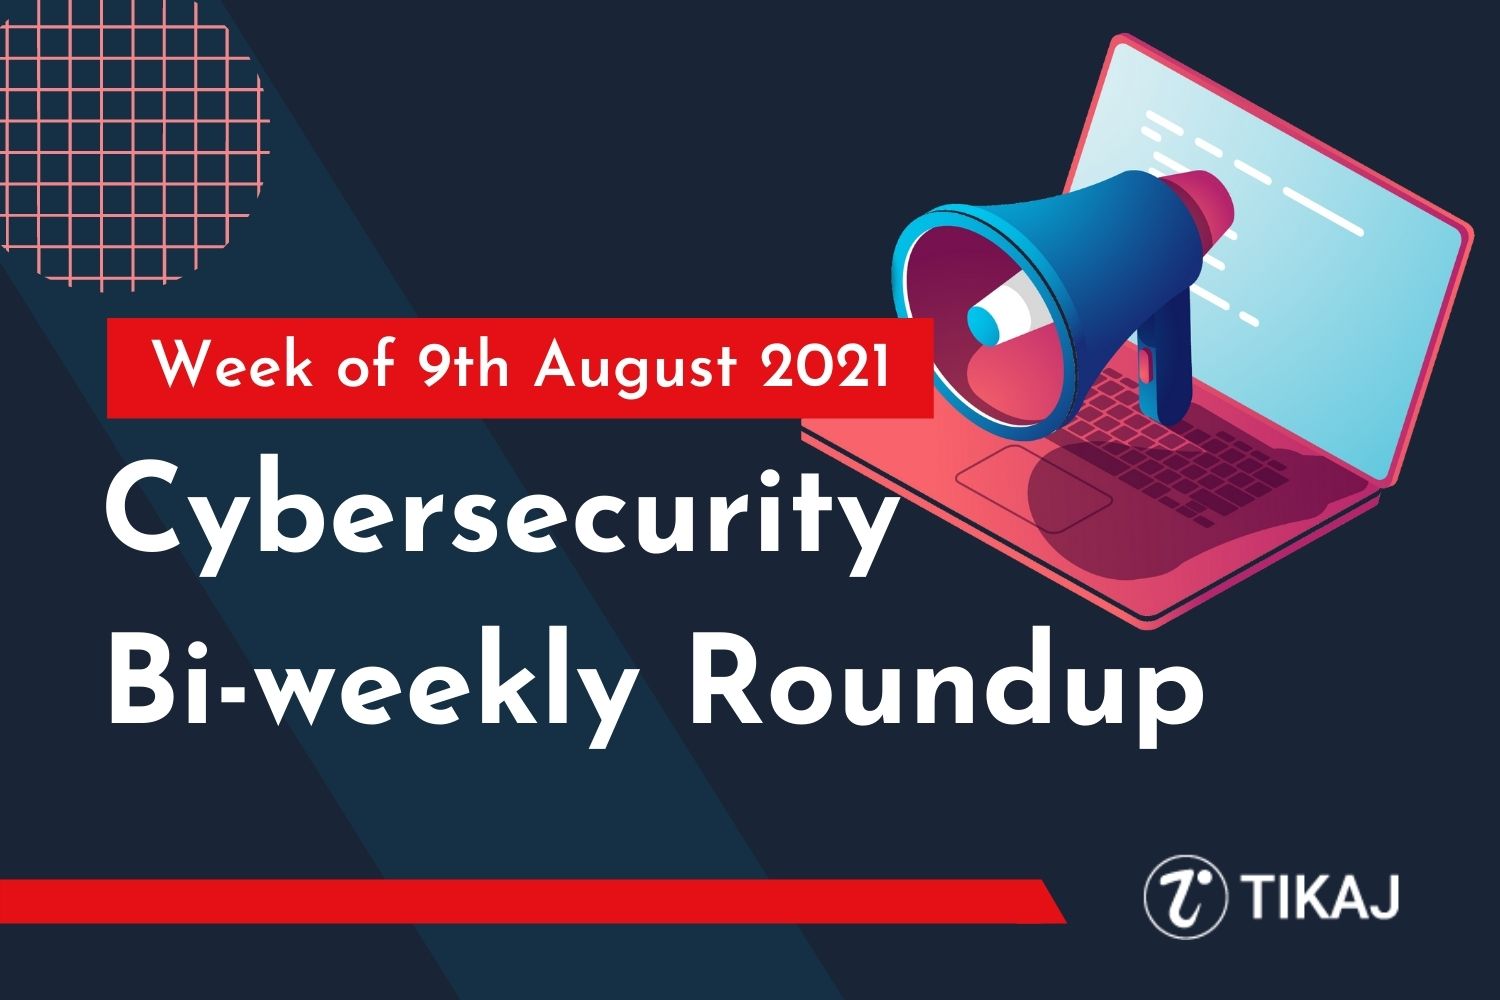 Cybersecurity Bi-weekly Roundup: Week of 9th August 2021